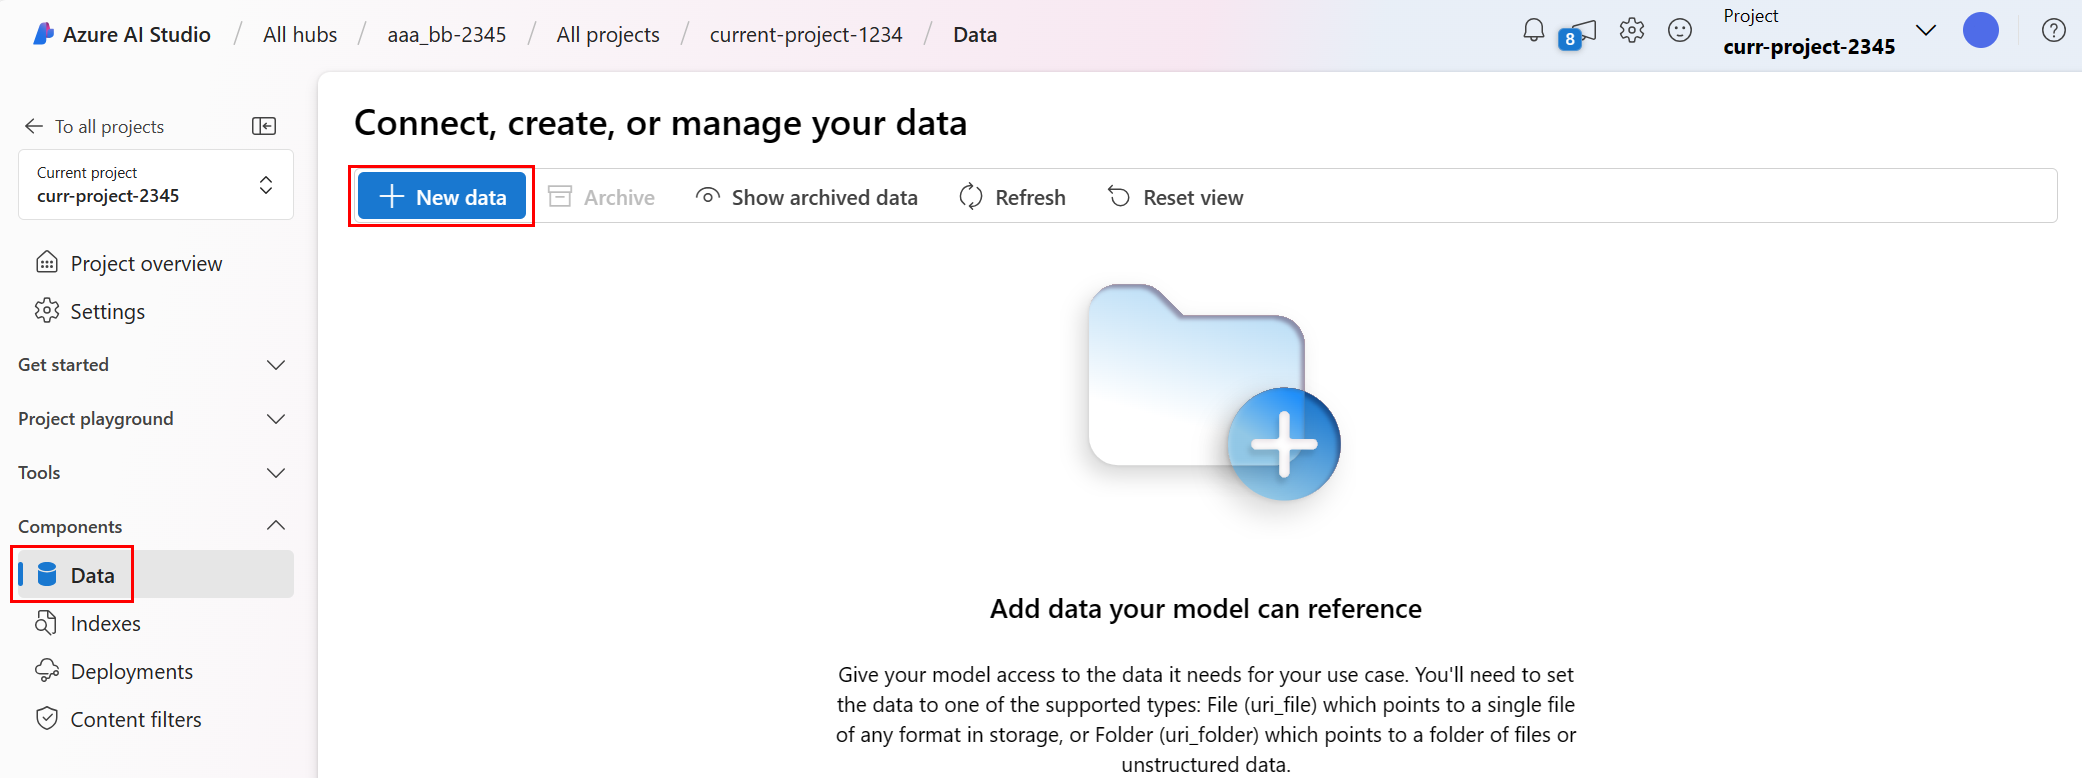 Screenshot highlights Add Data in the Data tab.